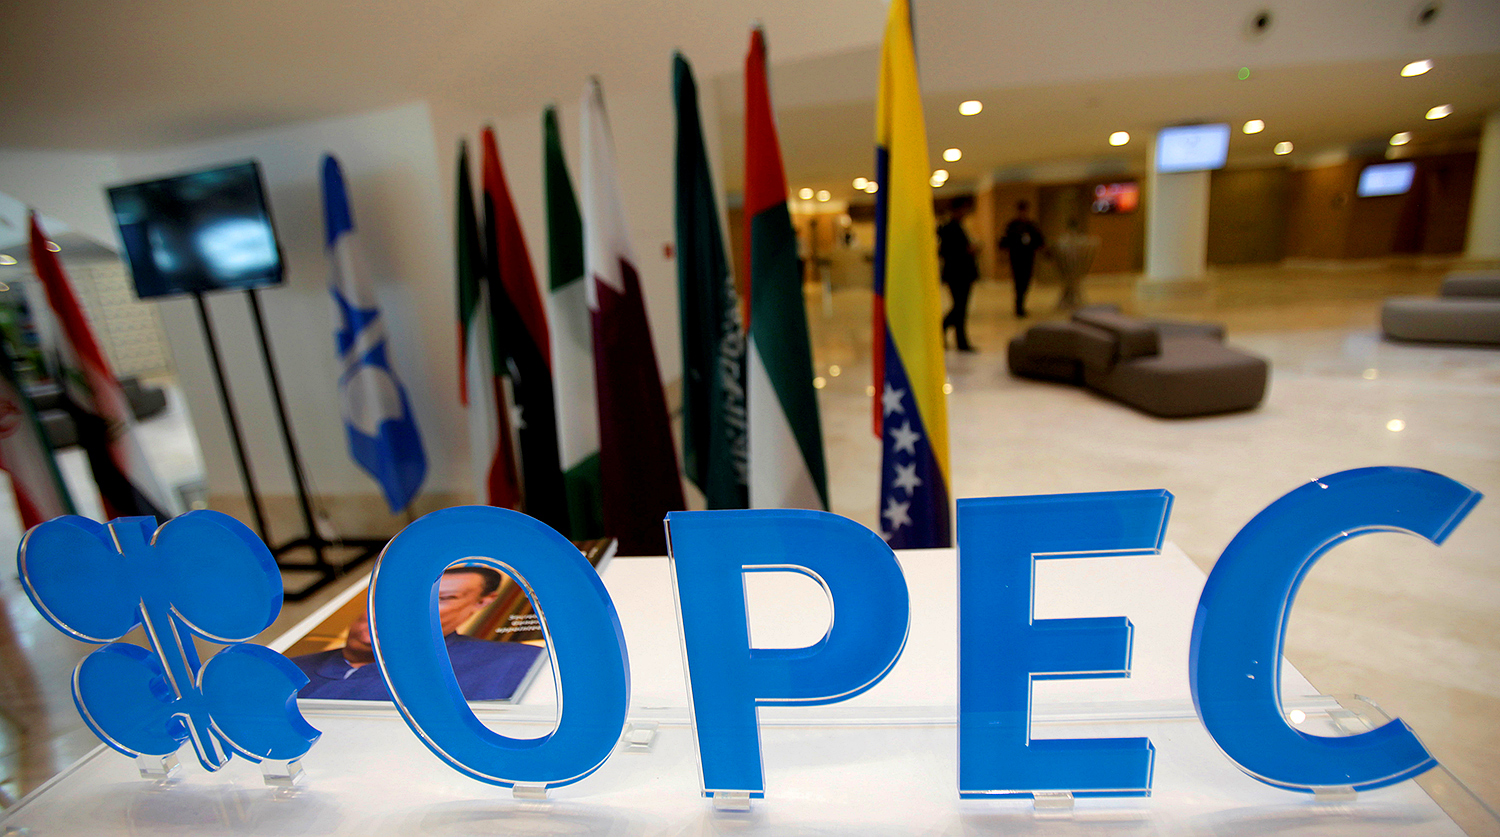 Катар выйдет из ОПЕК 1 января